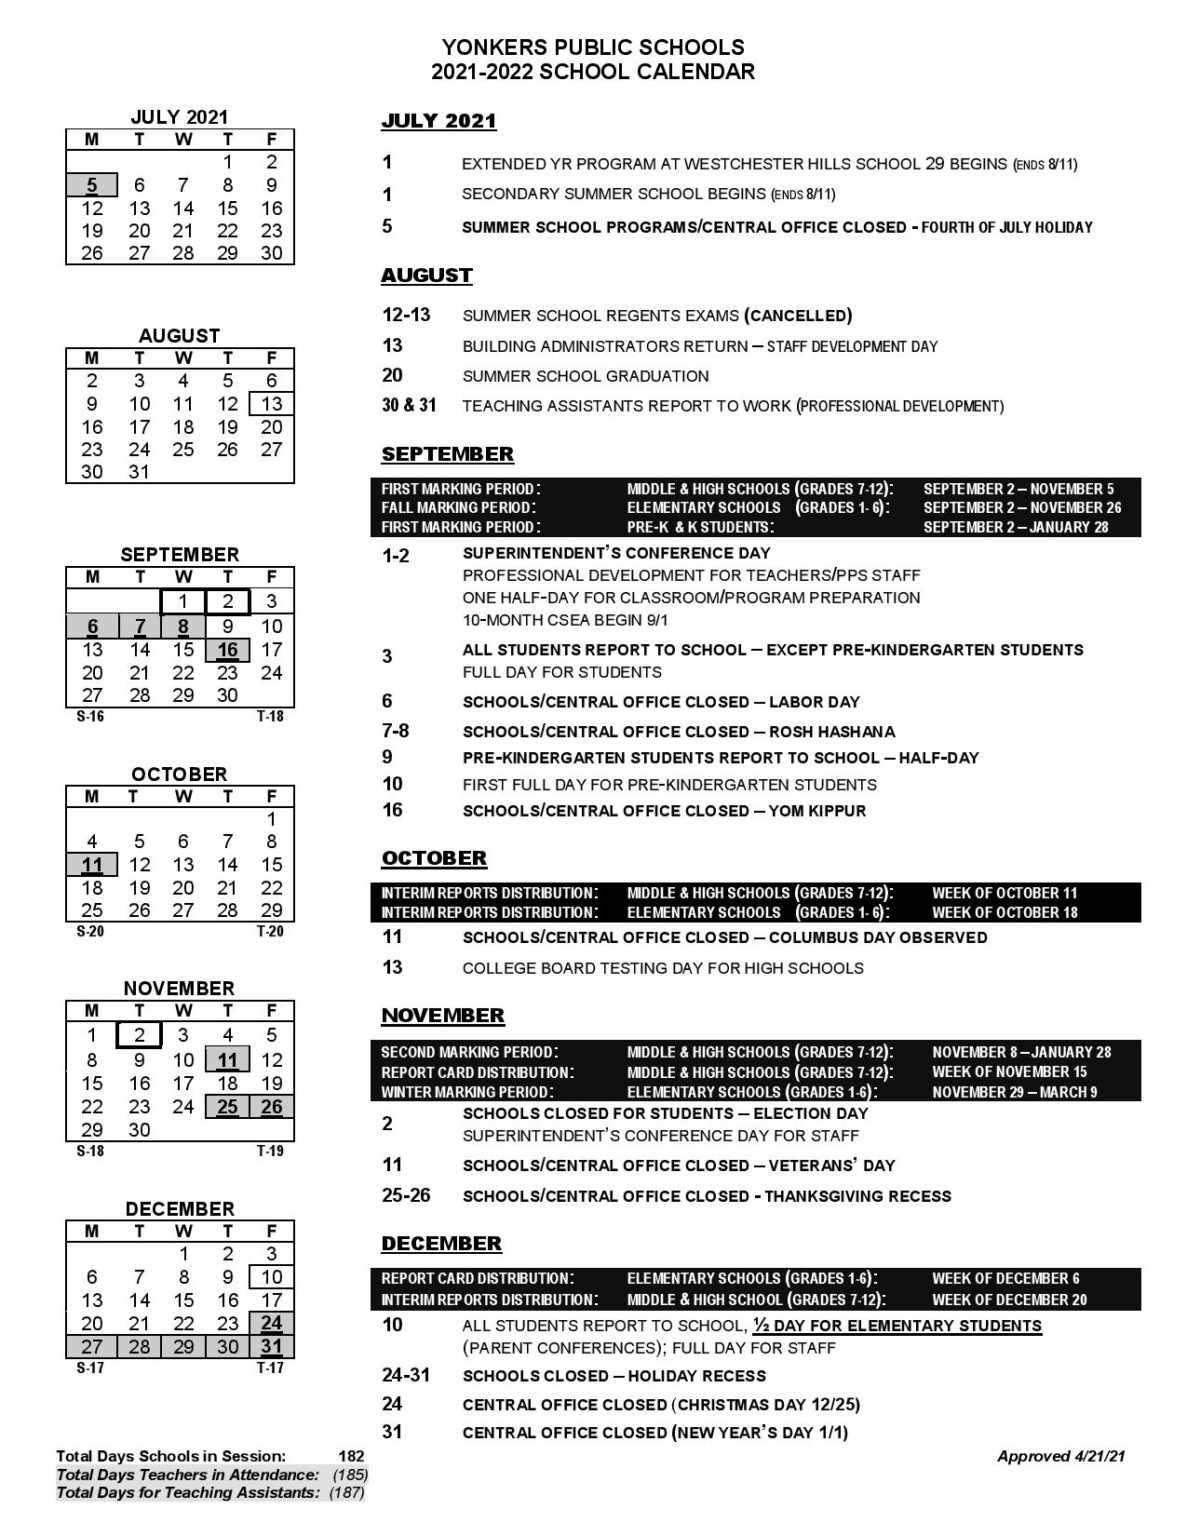 Yonkers Public Schools Calendar 20212022 in PDF